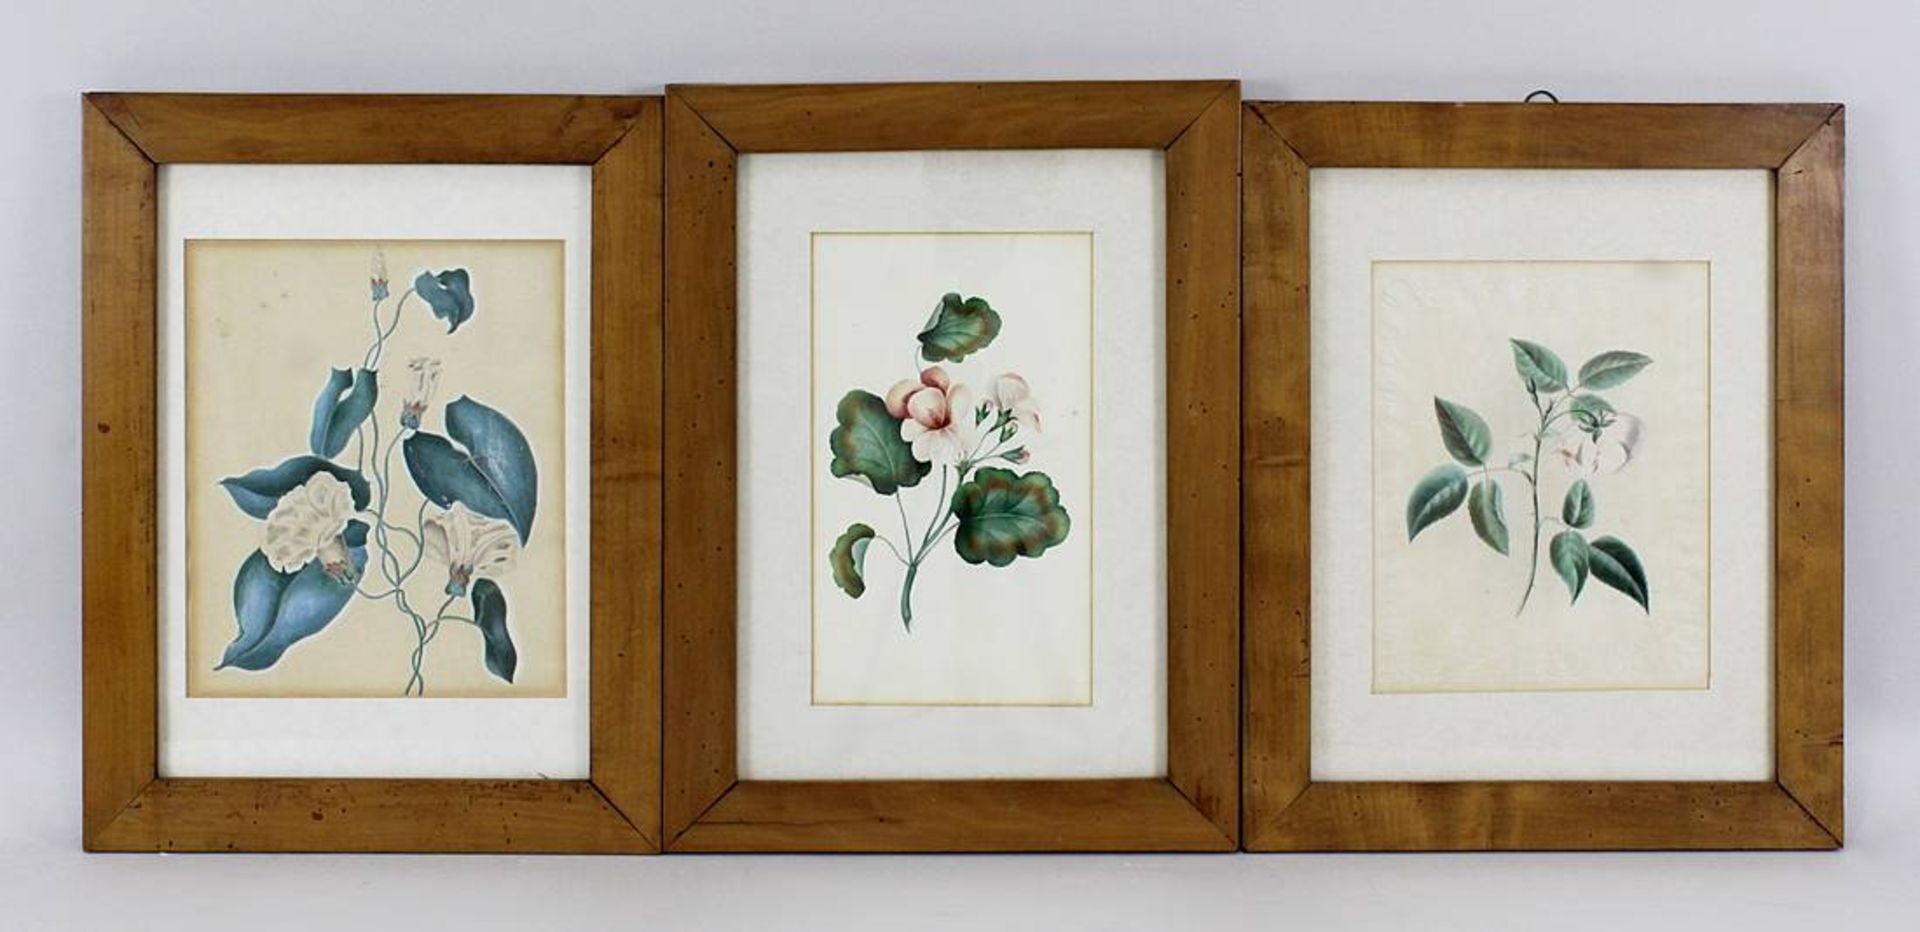 8 Aquarelle und Lithographien mit Blumenmotiven, deutsch, 19. Jh.: 5 Aquarelle mit Hibiskus, Rose,